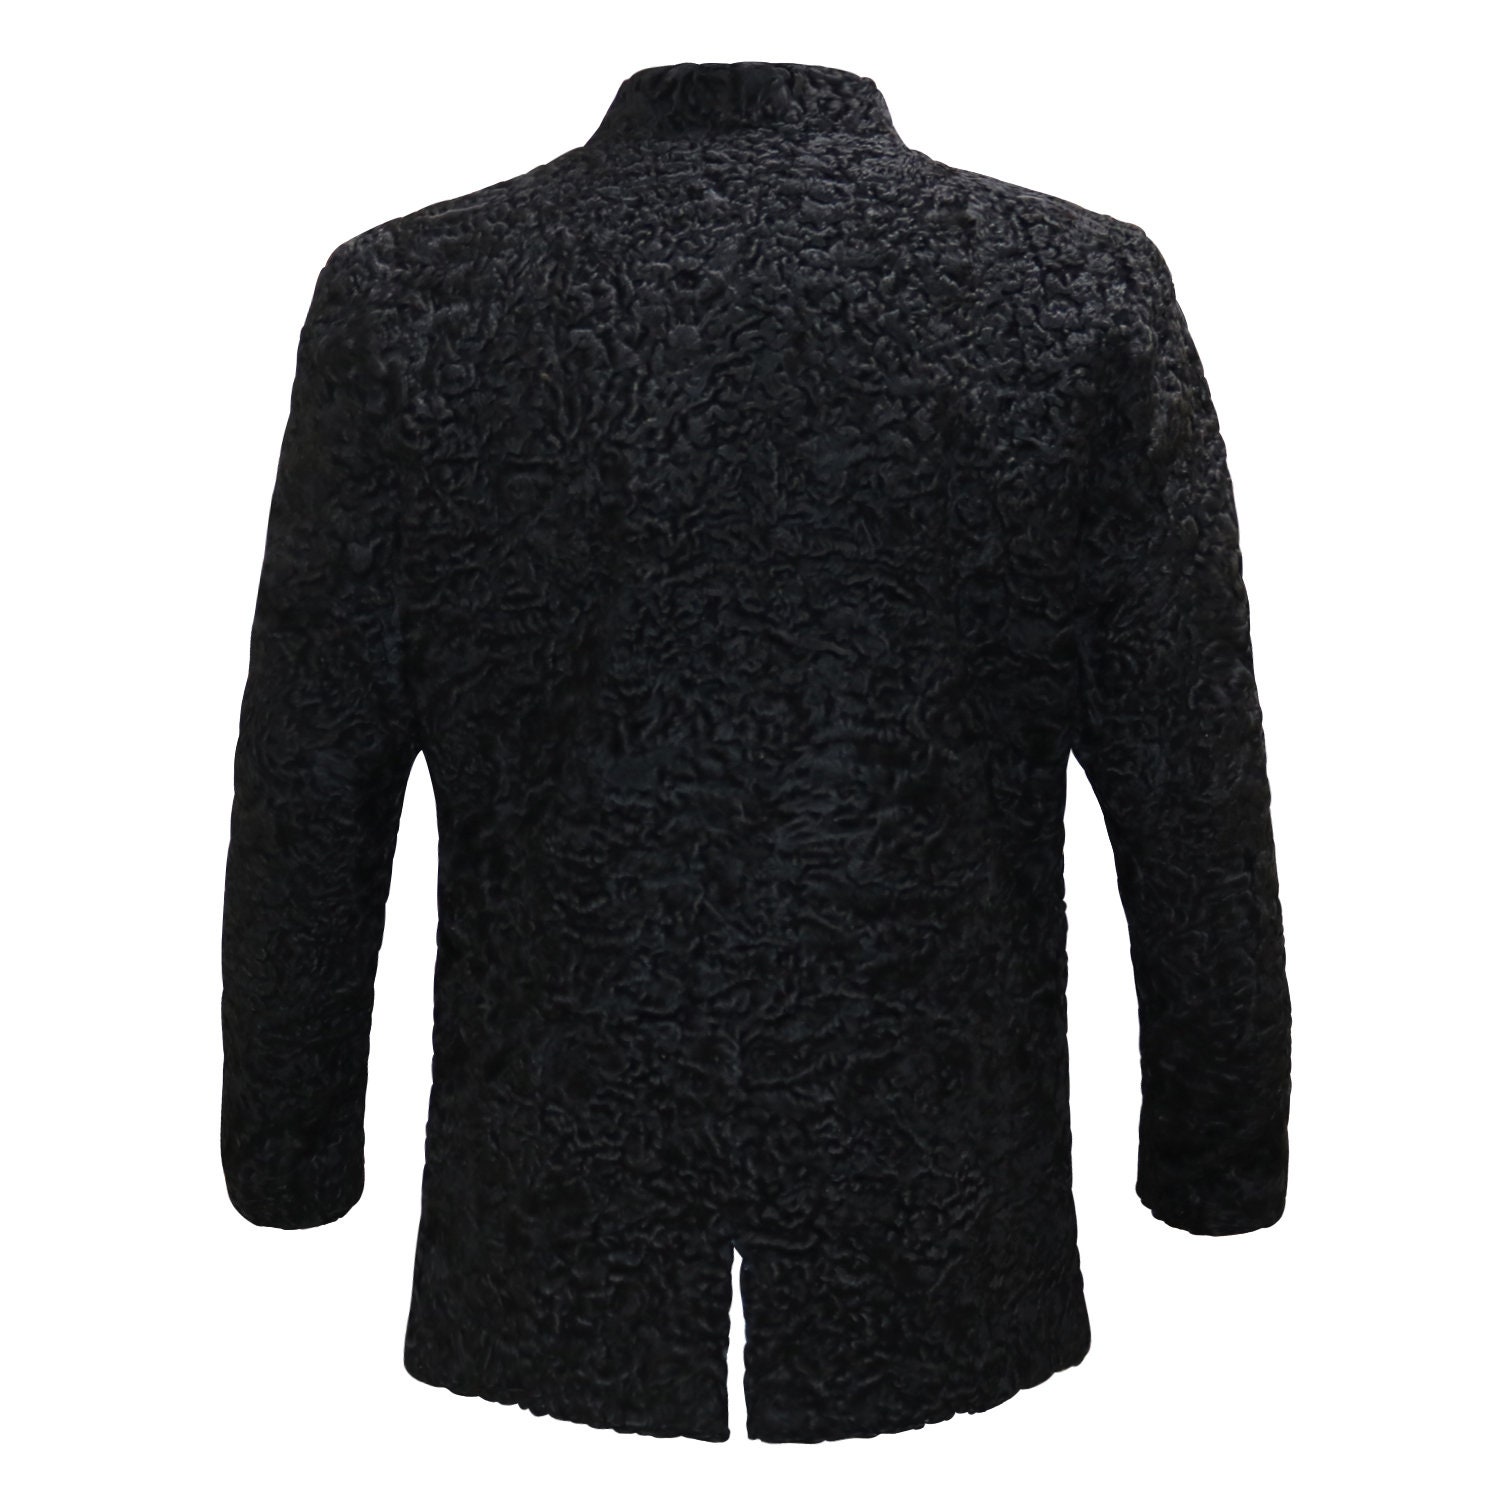 Persian Black Lamb Fur Coat Unisex Soft Karakul Lamb Fur | Etsy